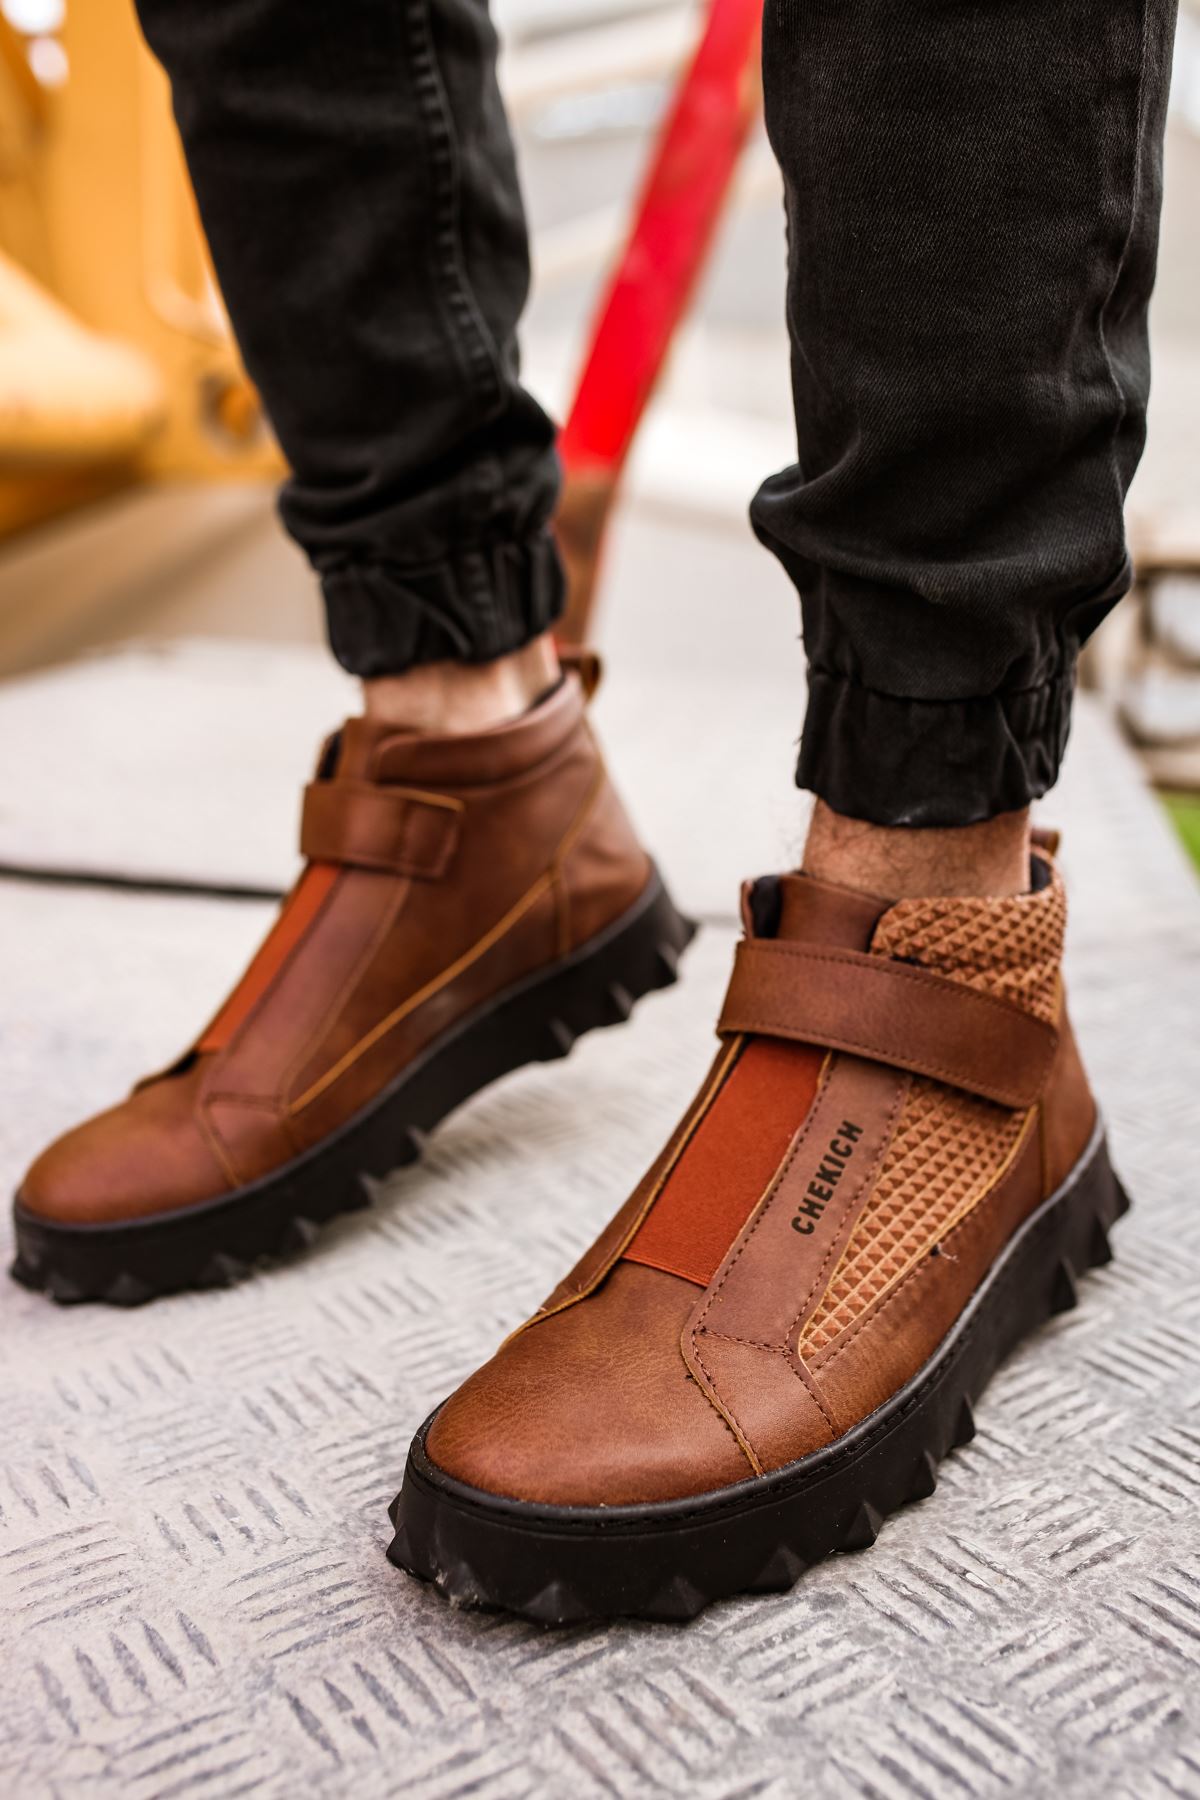 Chekich Boots for Men Black Color Faux Leather Breathable shoe